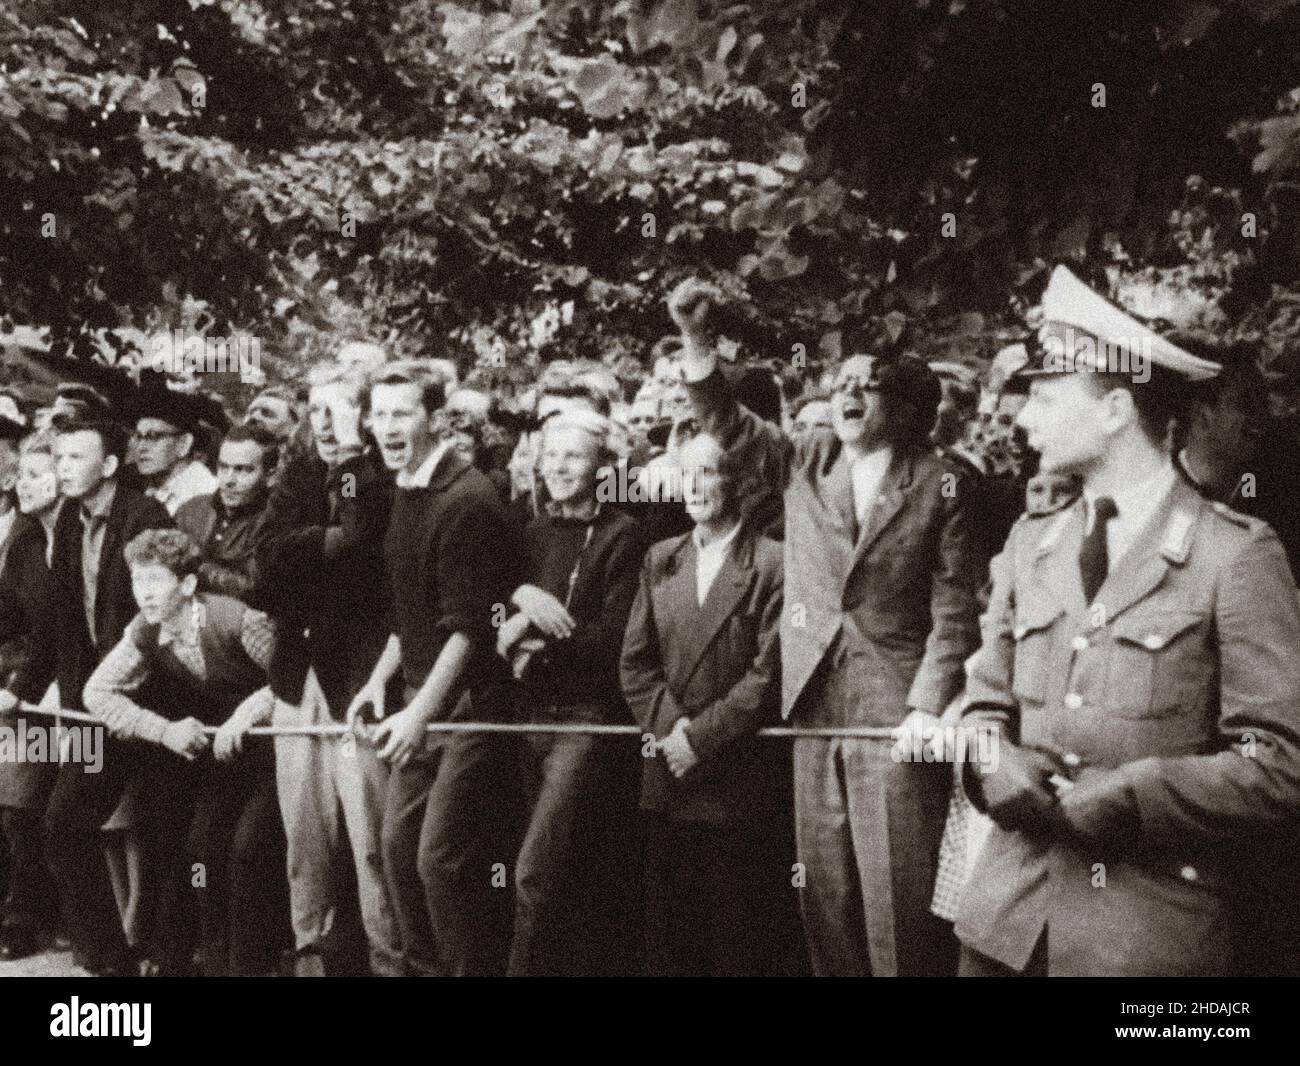 Berliner Krise von 1961. Proteste gegen die berliner Mauer in West-Berlin. Die Serie der archivel-Fotos zeigt das Reiseverbot zwischen Ost und West im August 1961 Stockfoto